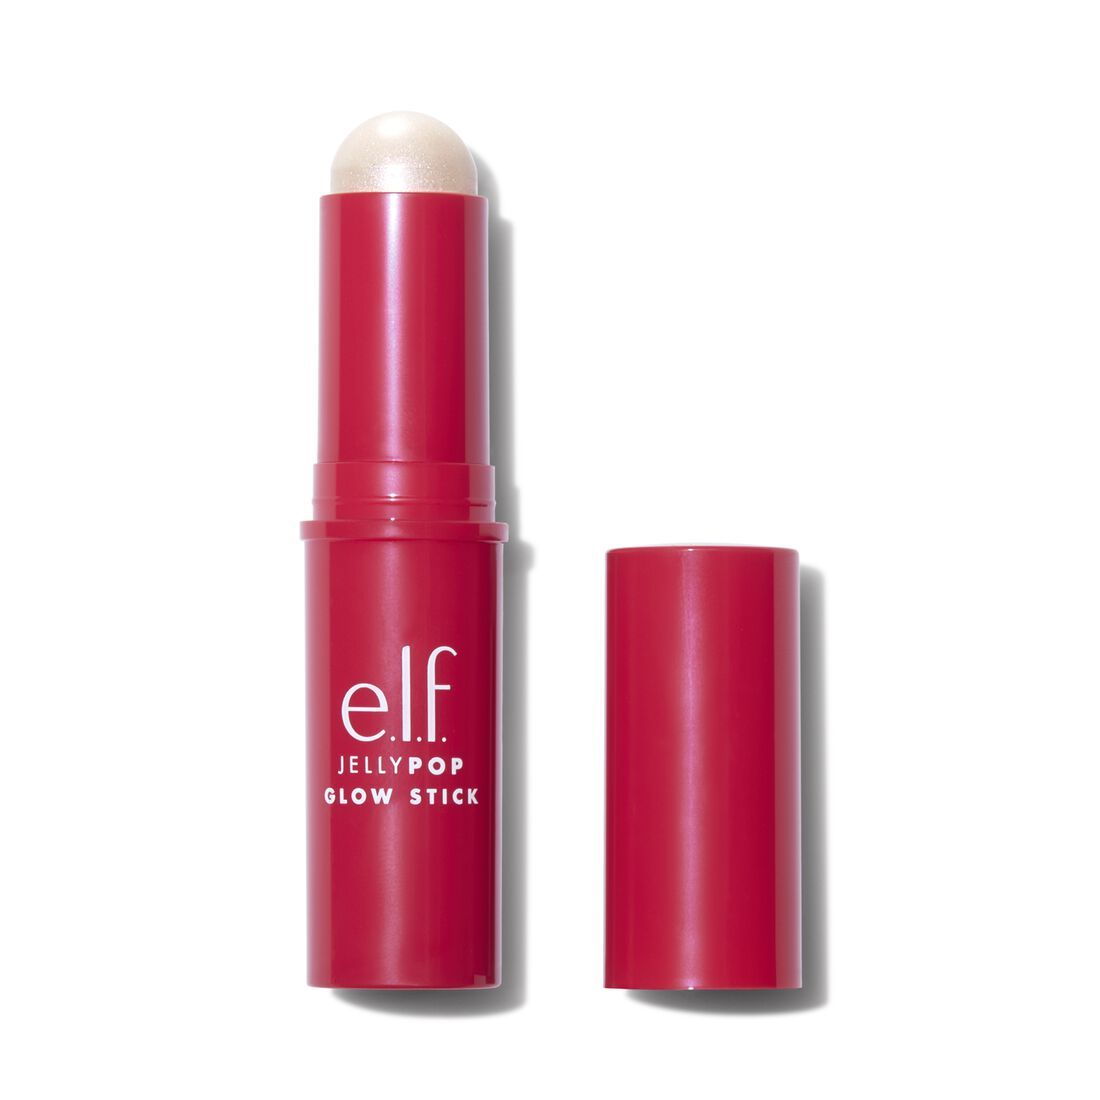 Jelly Pop Glow Stick | e.l.f. cosmetics (US)